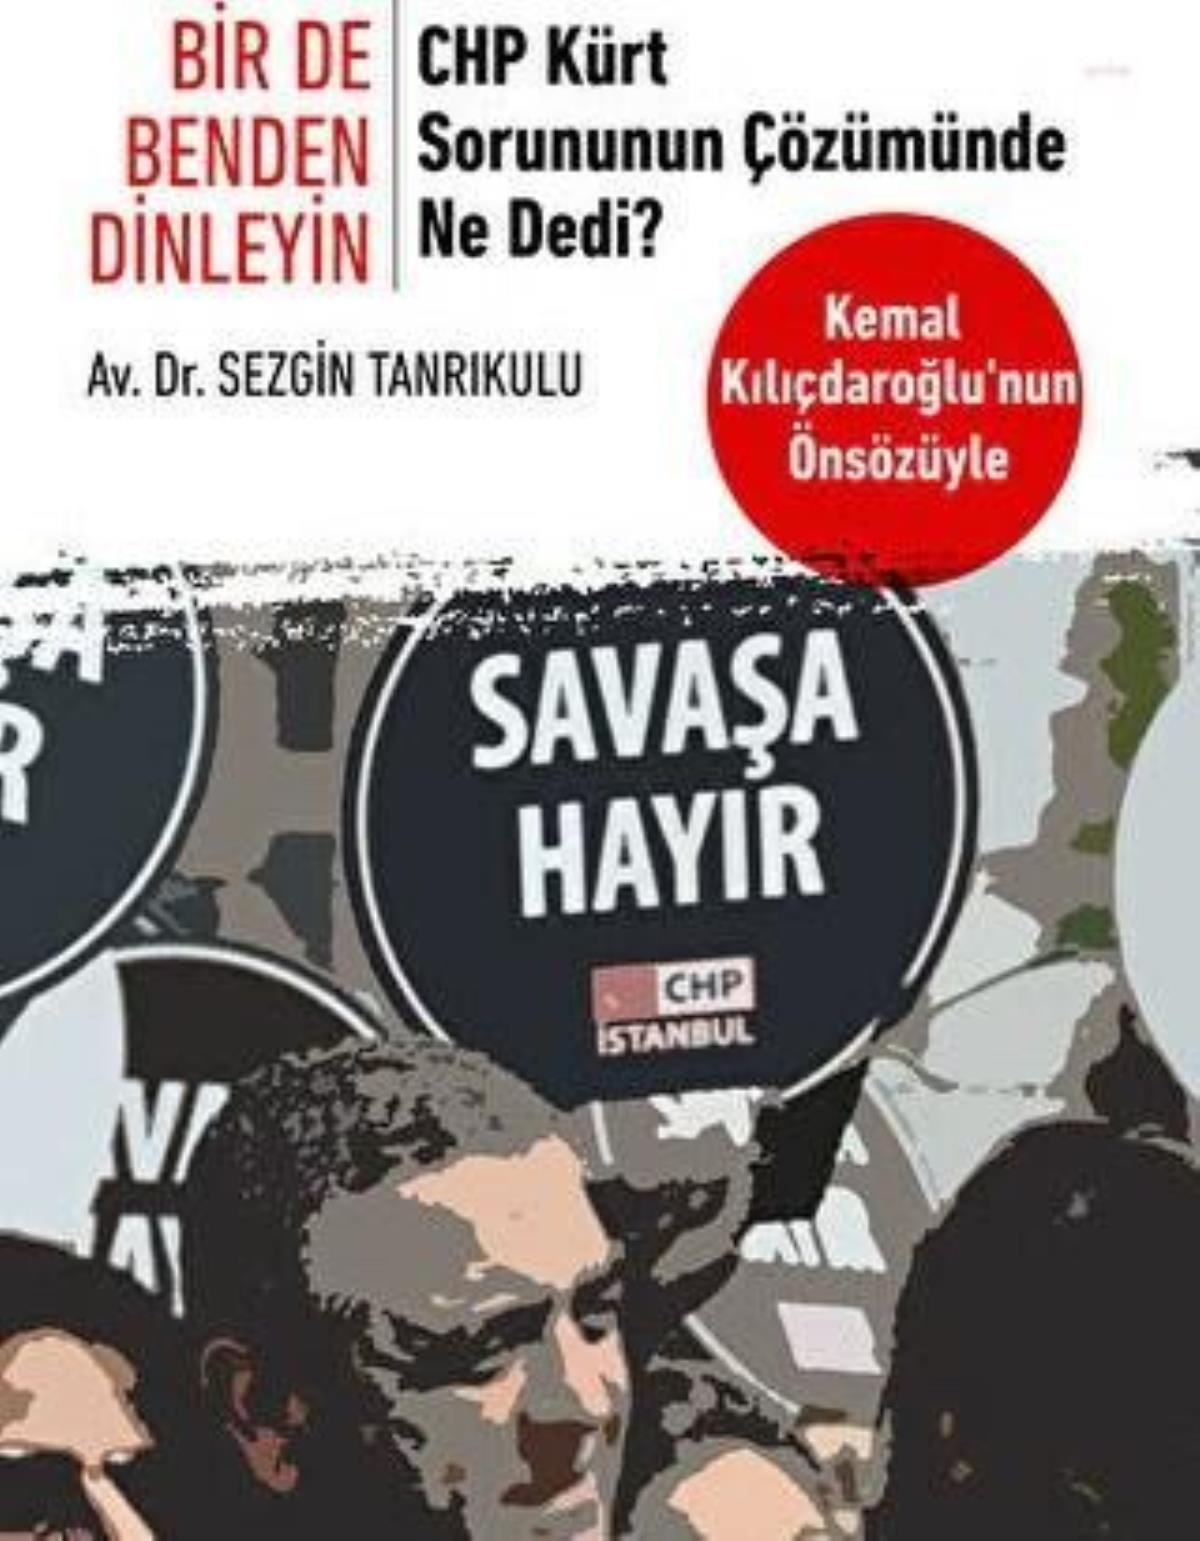 Kılıçdaroğlu: "Dün Olduğu Üzere Bugün de Kürt Sıkıntısını Demokratik Yollardan Çözmeye, Terörü Sonlandırmaya, Anaların Gözyaşlarını Dindirmeye Kararlıyız"